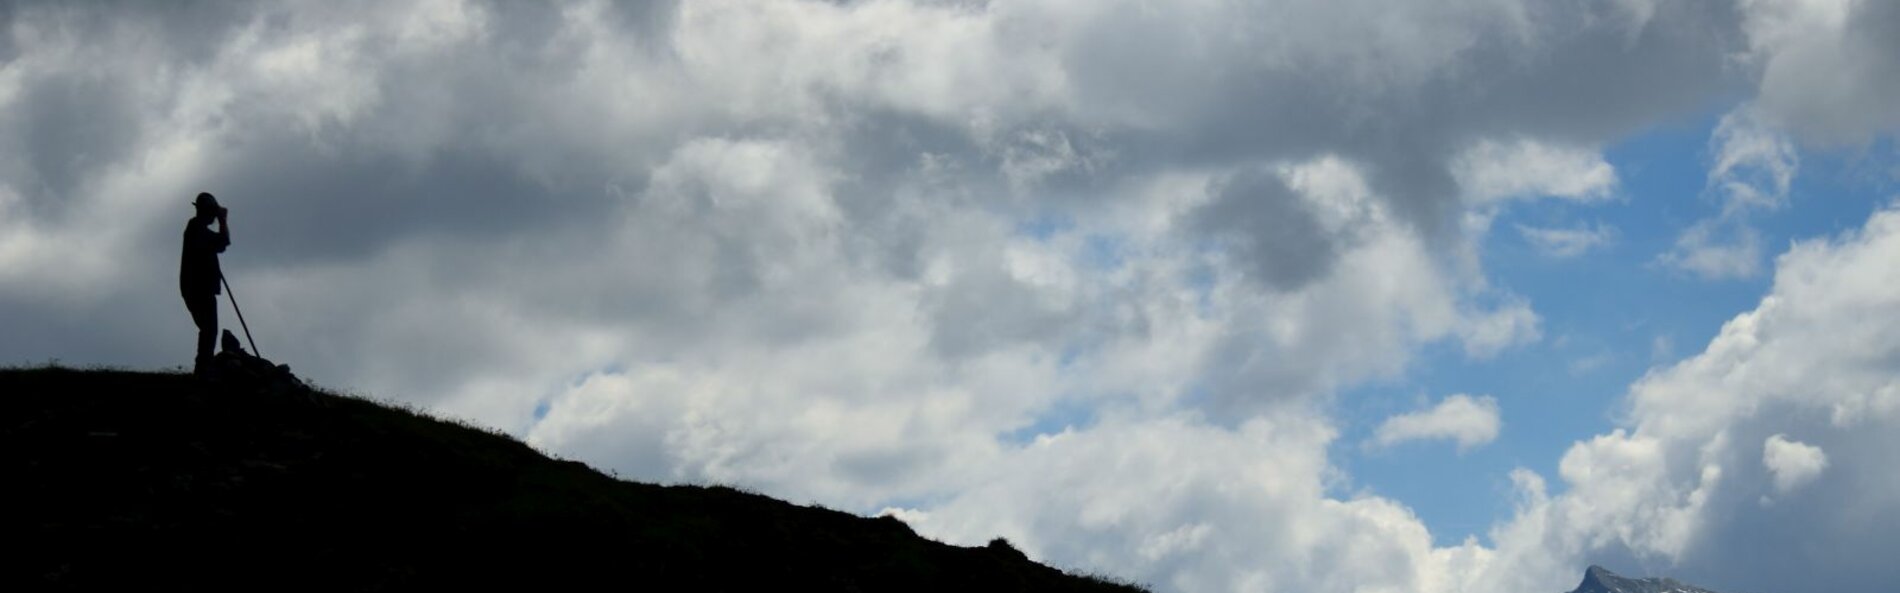 Ein Bauer steht auf eine, Berg mit einem Stock. Ma sieht nur die Silhouette von Berg und Bauer. Im Hintergrund ziehen weiße Wolken vorbei.